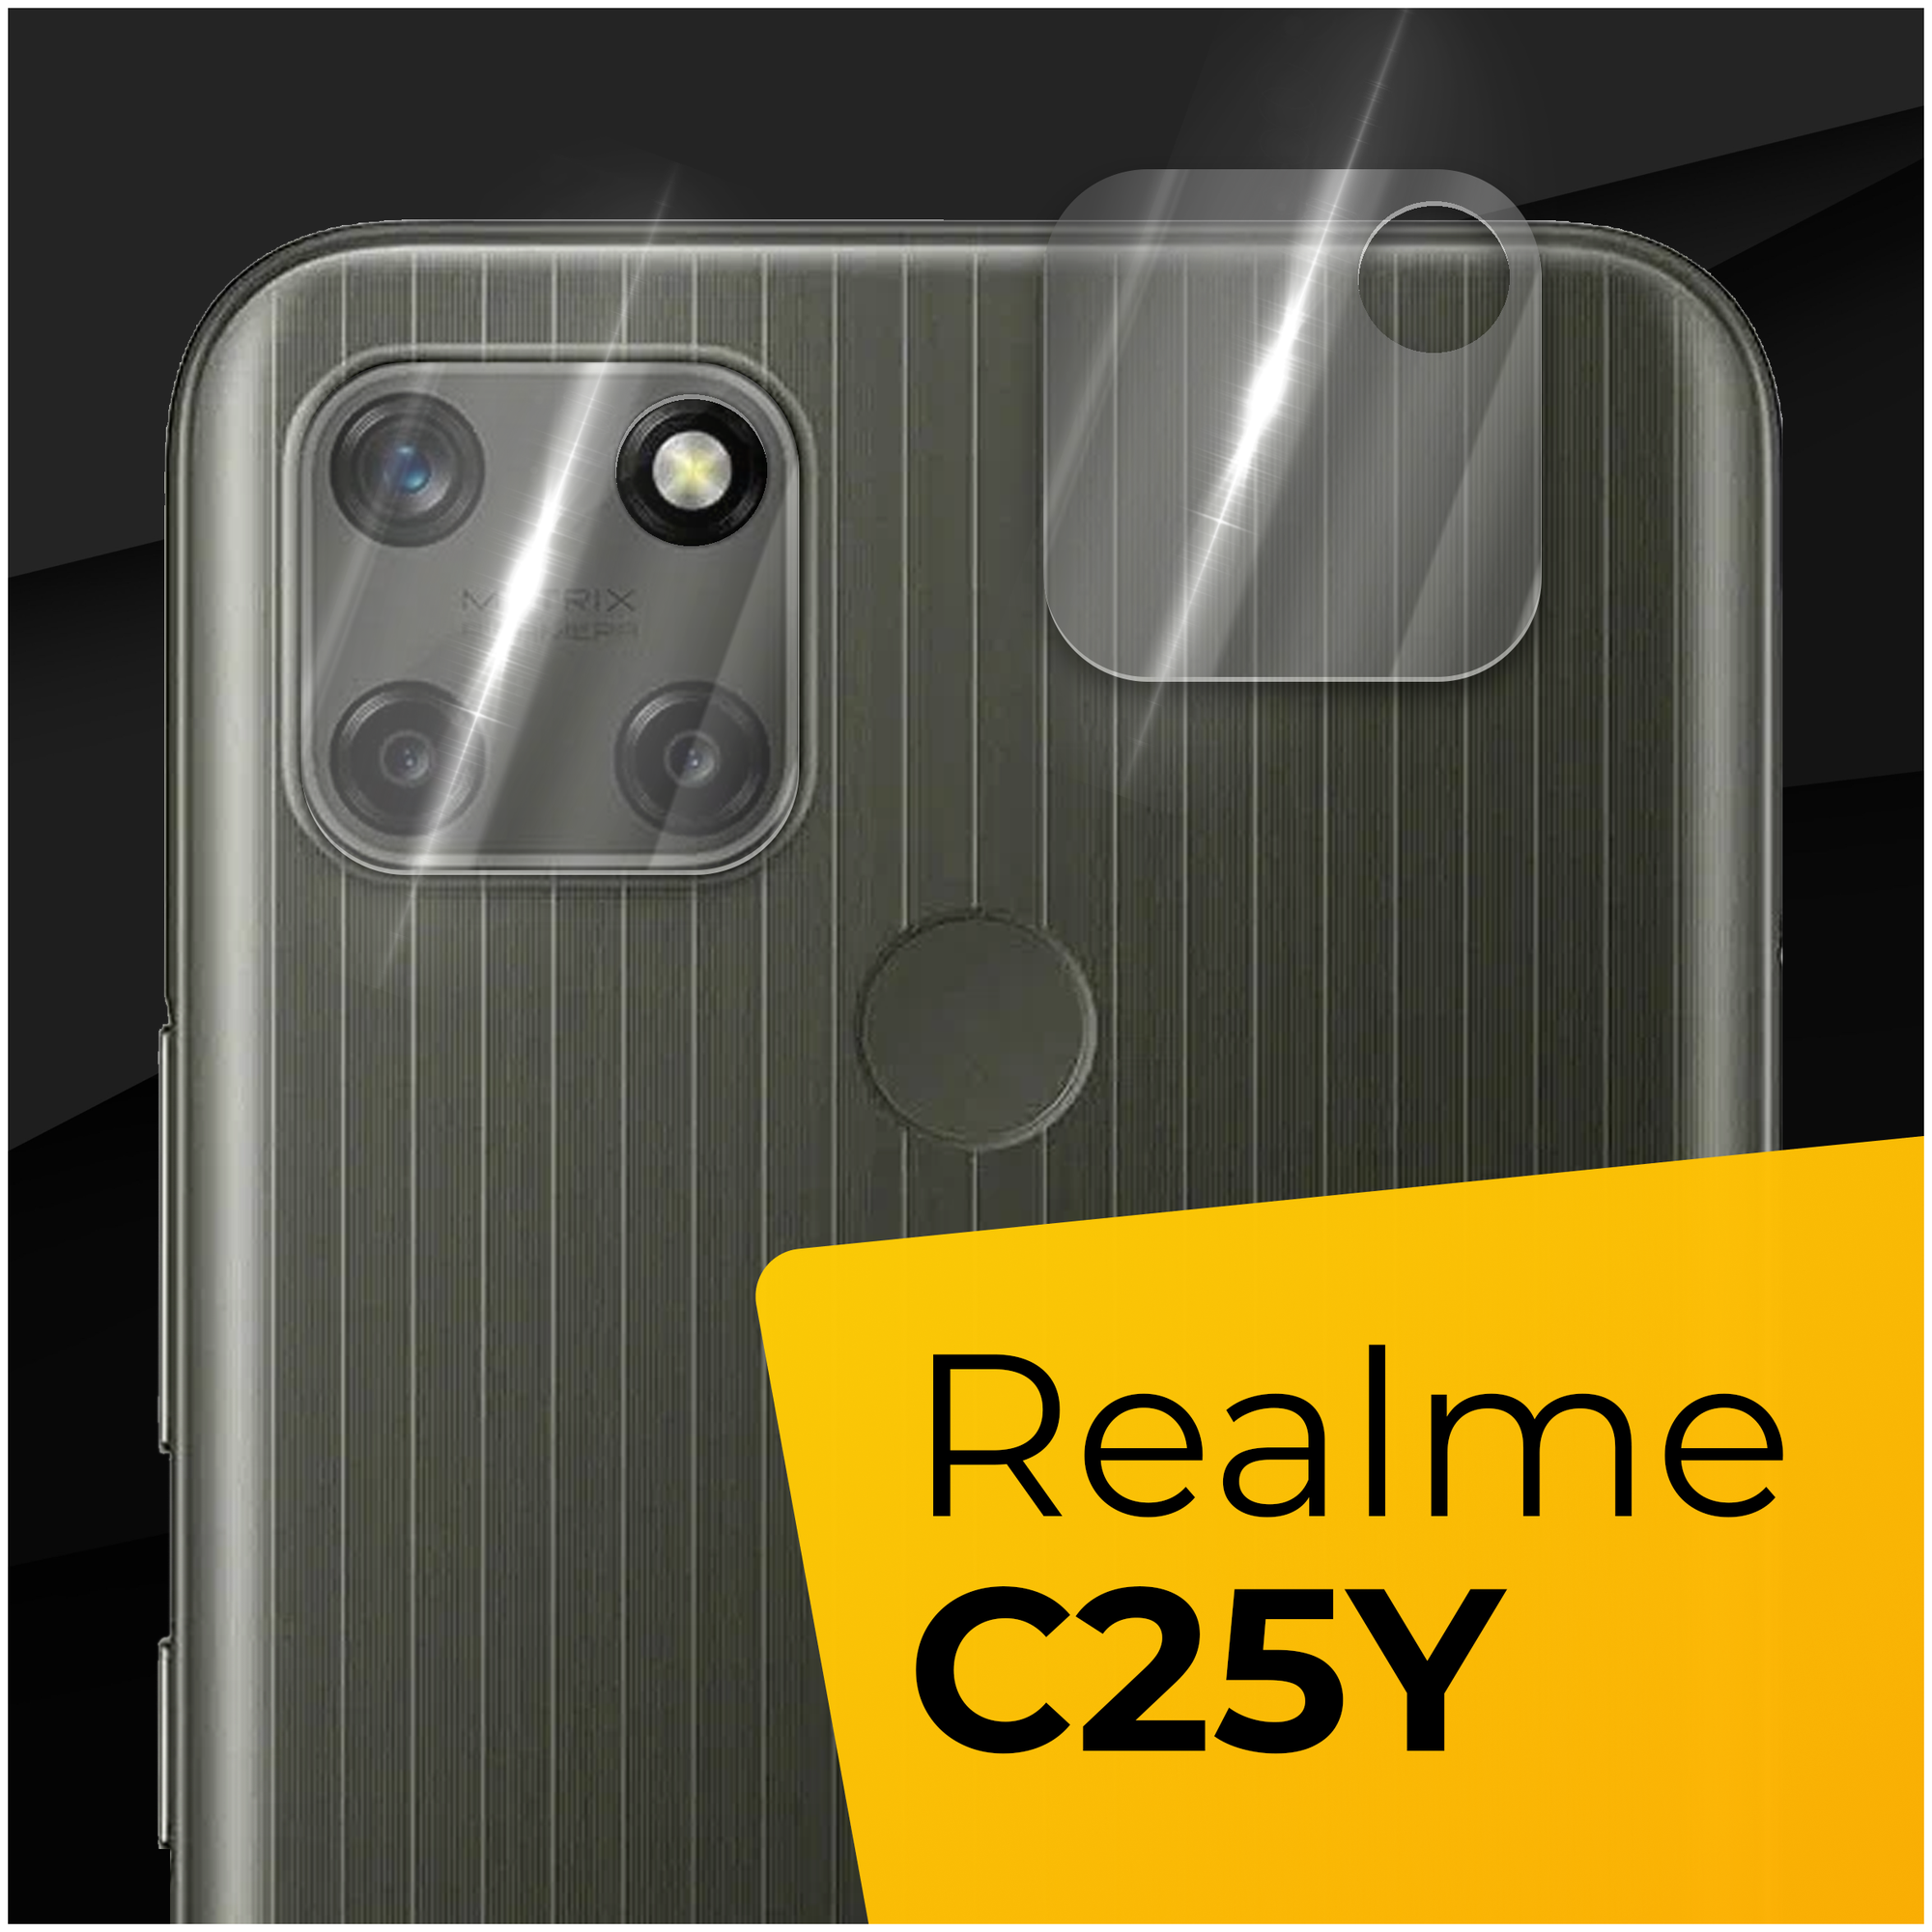 Противоударное защитное стекло для камеры телефона Realme C25Y / Тонкое прозрачное стекло на камеру смартфона Реалми С25У / Защита задней камеры